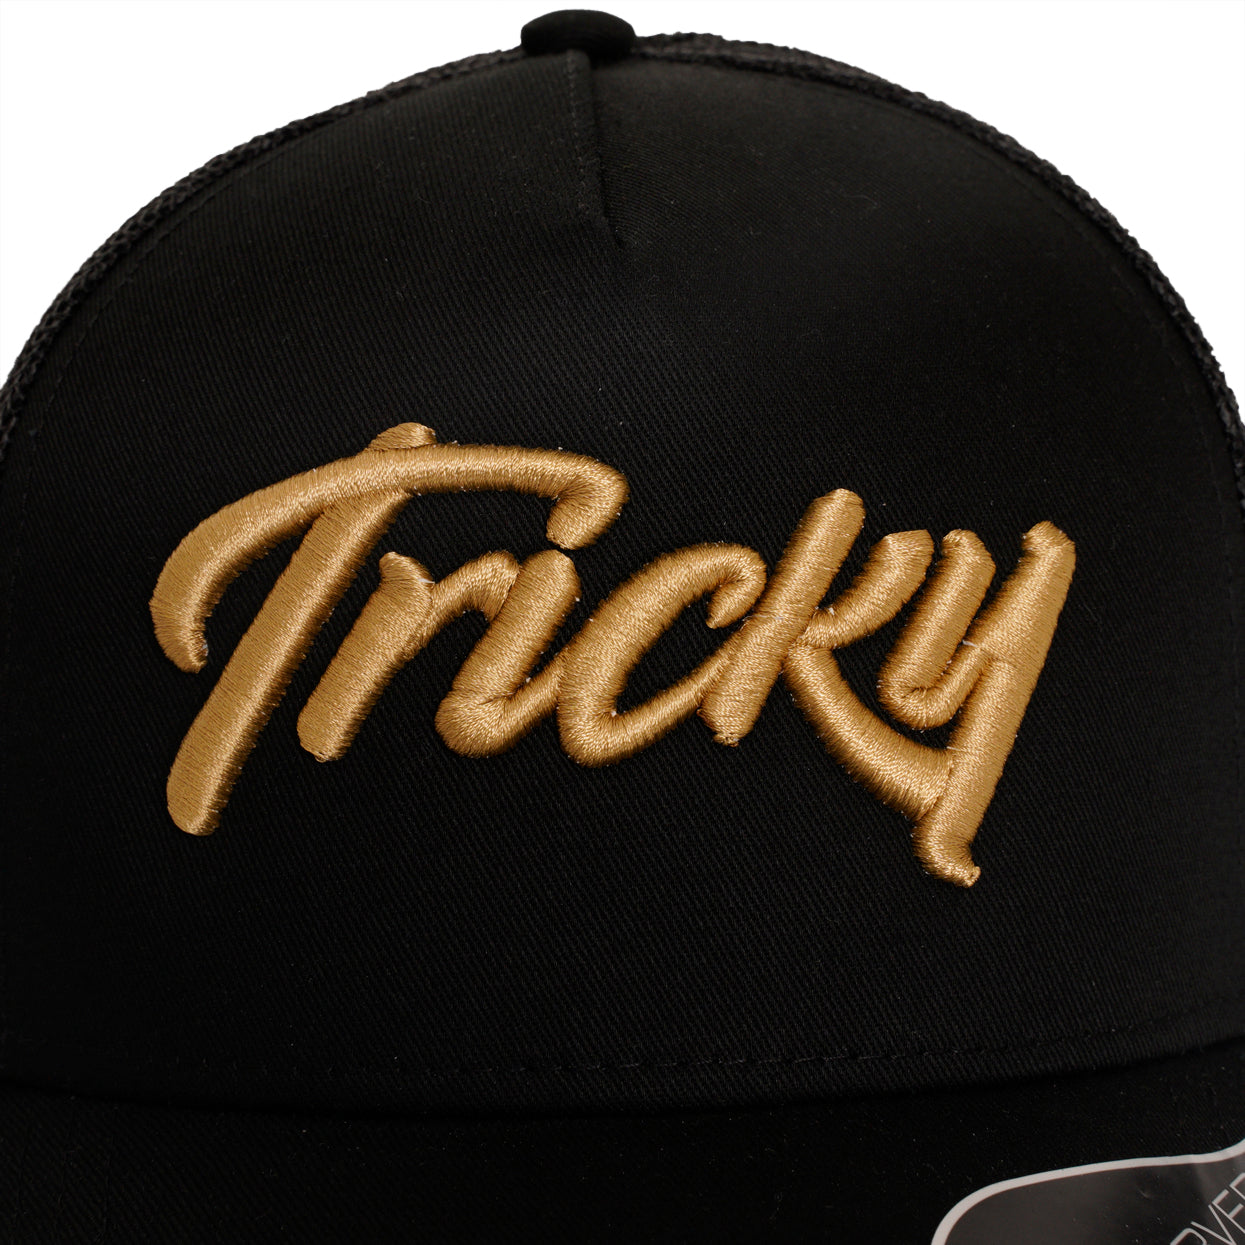 TRICKY LARGE LOGO 6 PANEL MESH TRUCKER CAP BLACK GOLD - THE "HARKER"